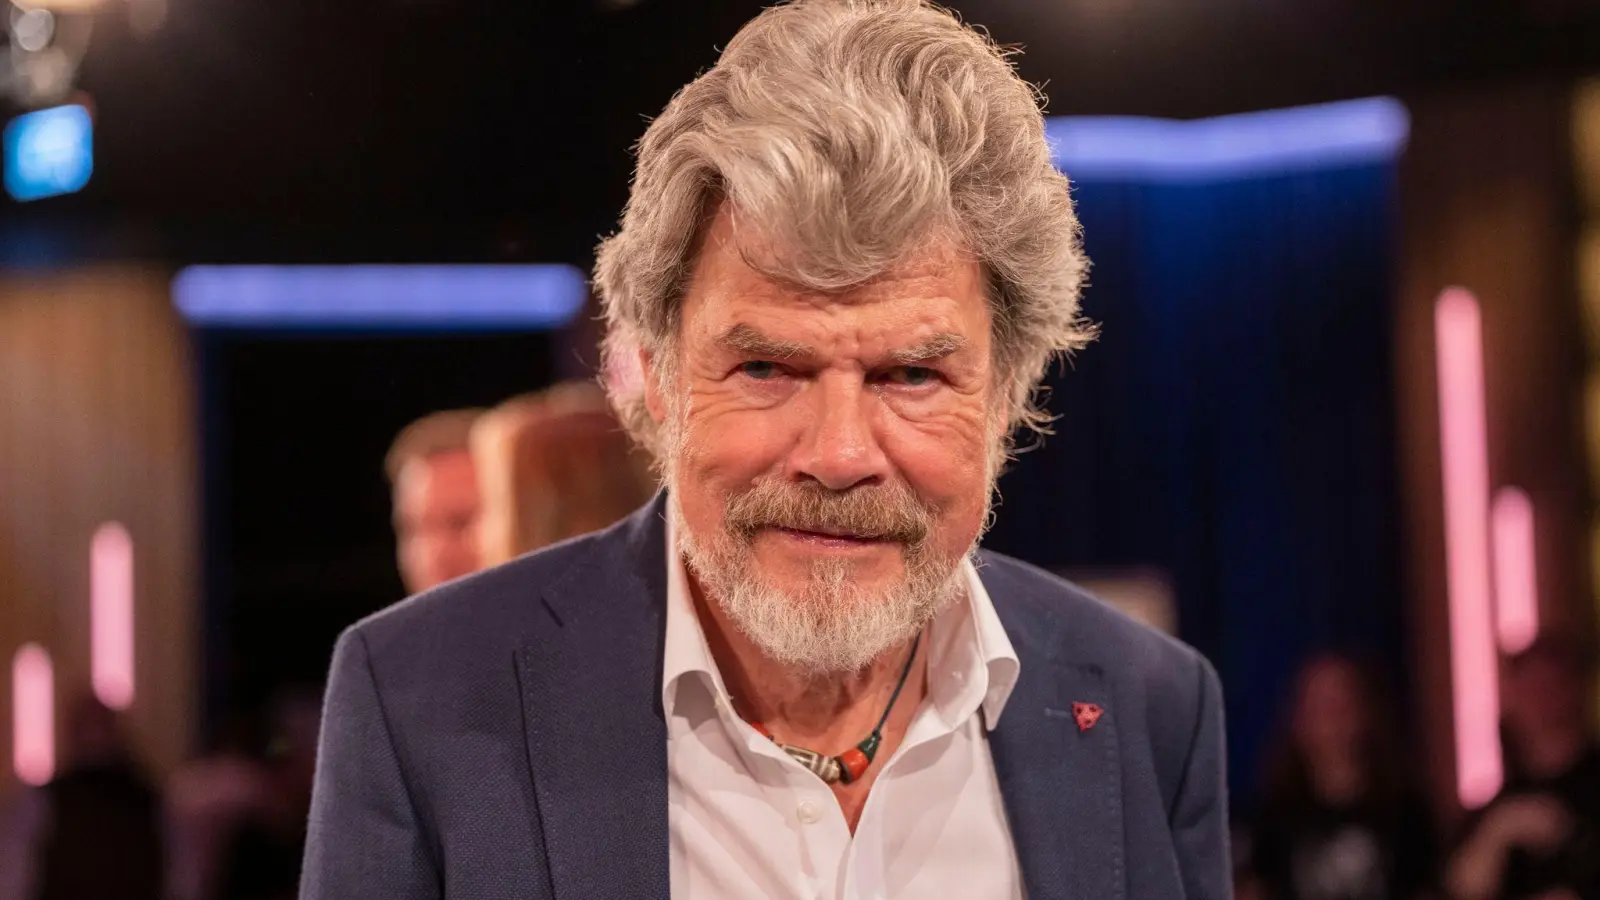 Reinhold Messner möchte nicht mehr im Guinness-Buch genannt werden. (Foto: Thomas Banneyer/dpa)